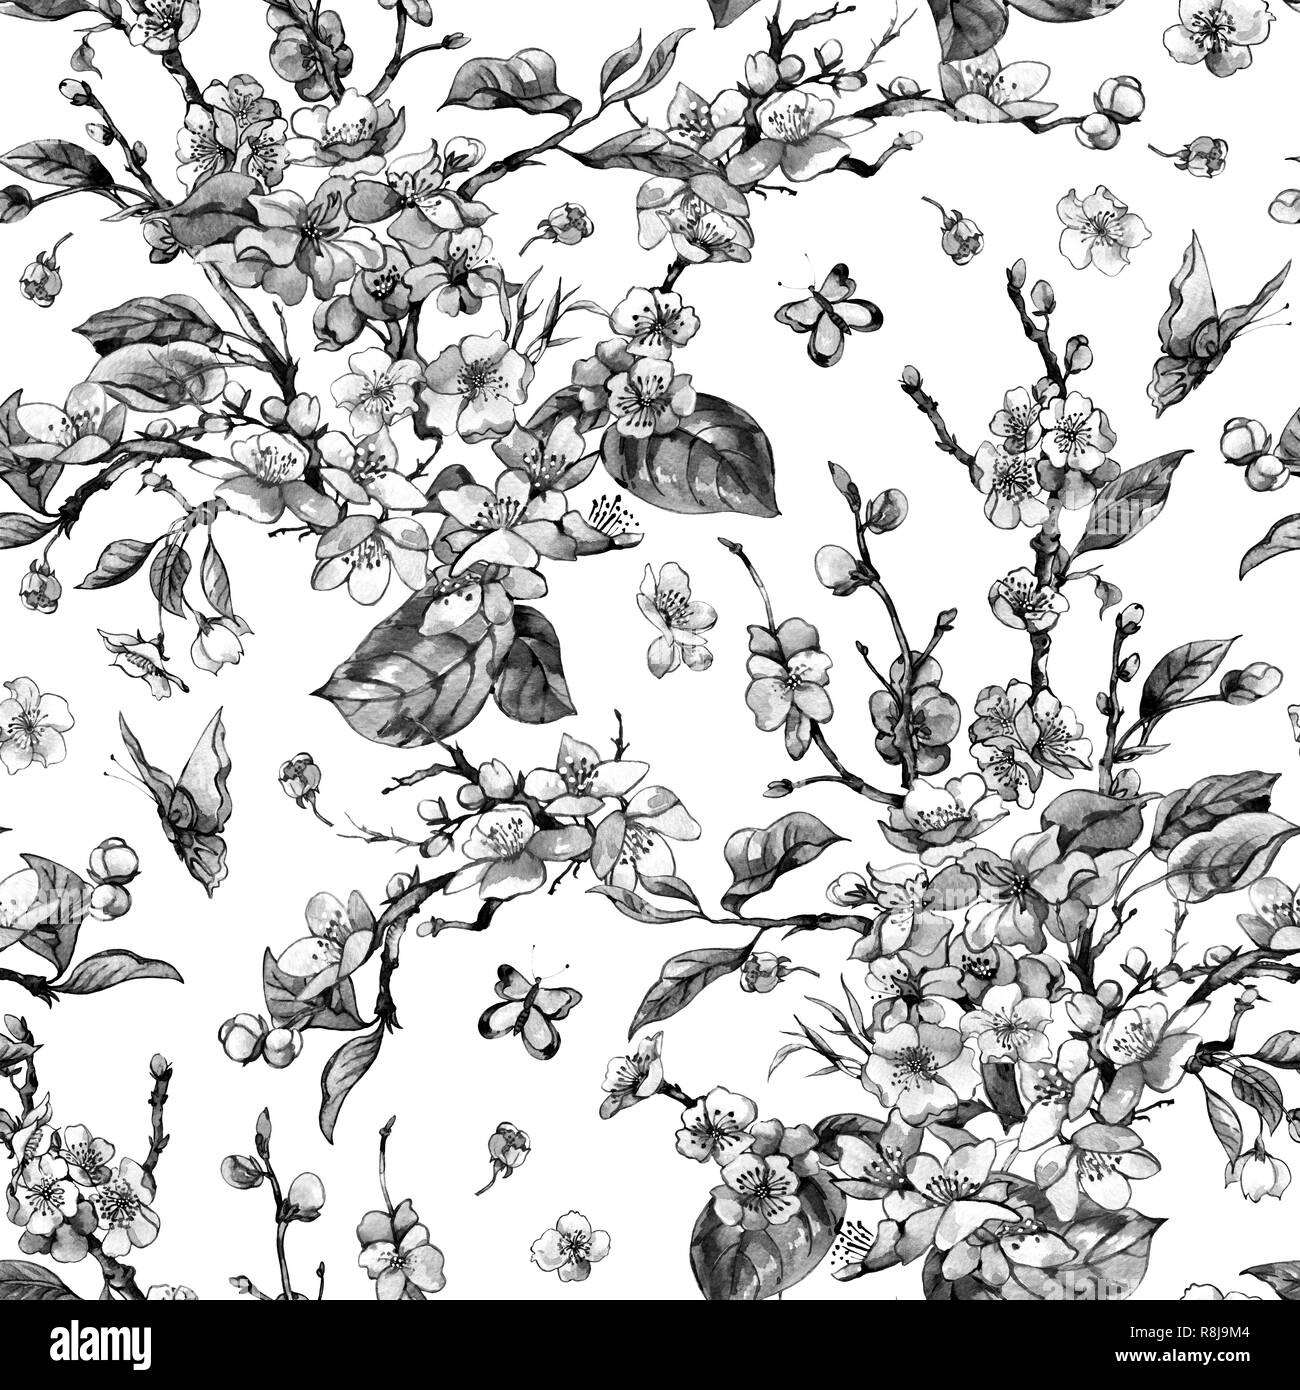 Aquarell schwarze und weiße Feder vintage floral nahtlose Muster mit blühenden Zweigen der Kirsche, Pfirsich, Birne, Sakura, Apfelbäume und Schmetterlinge, f Stockfoto